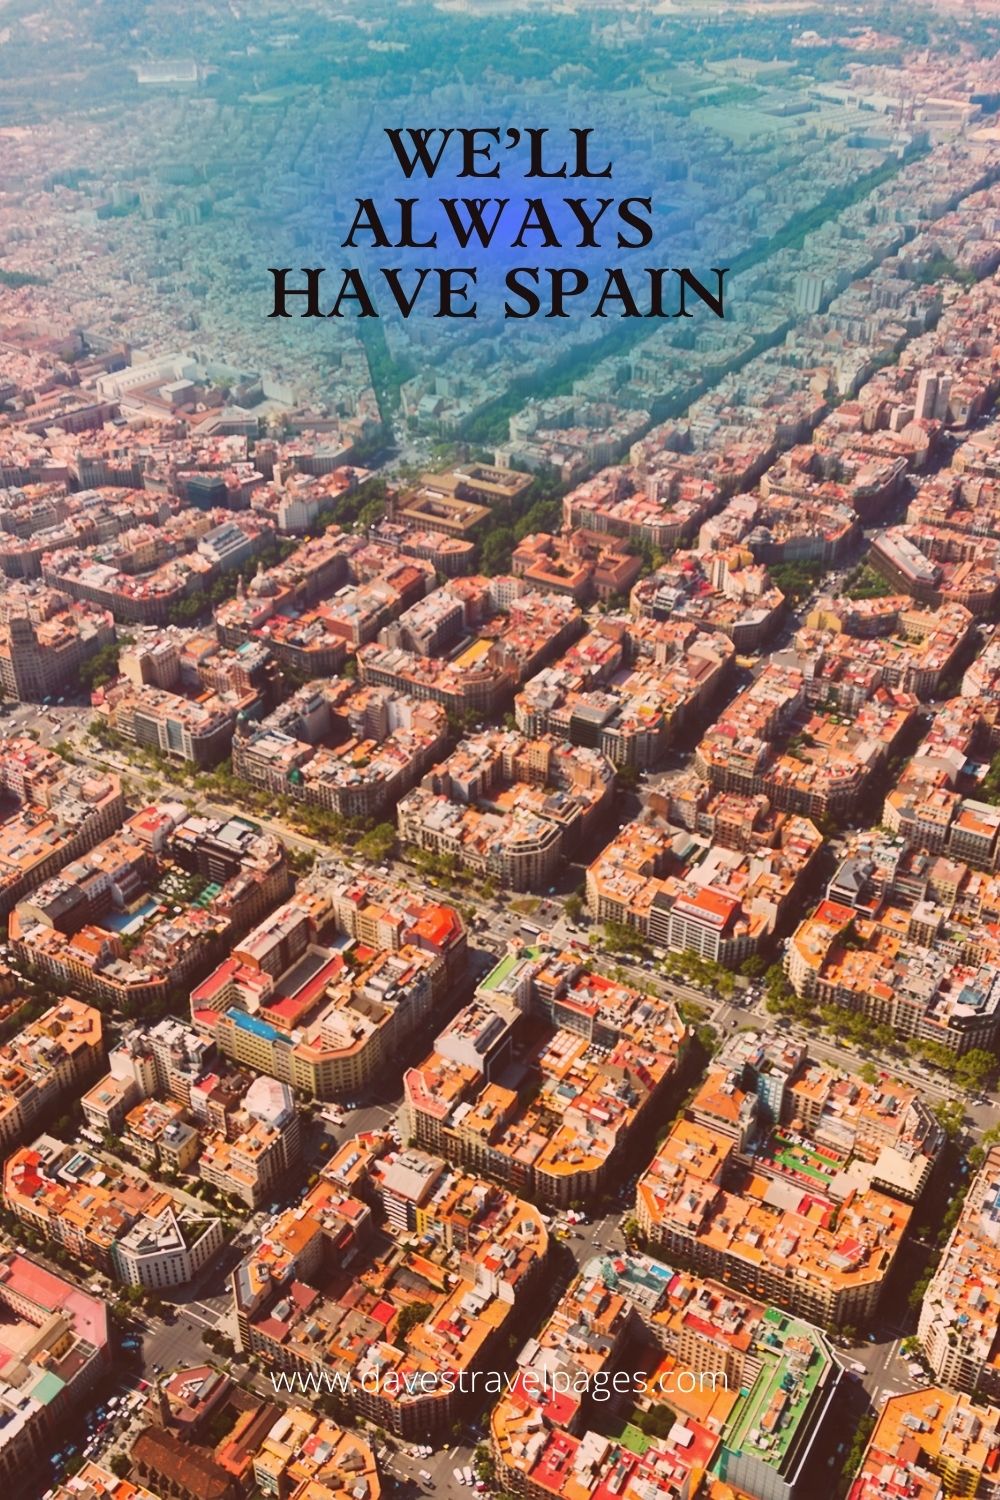 We'll always have Spain